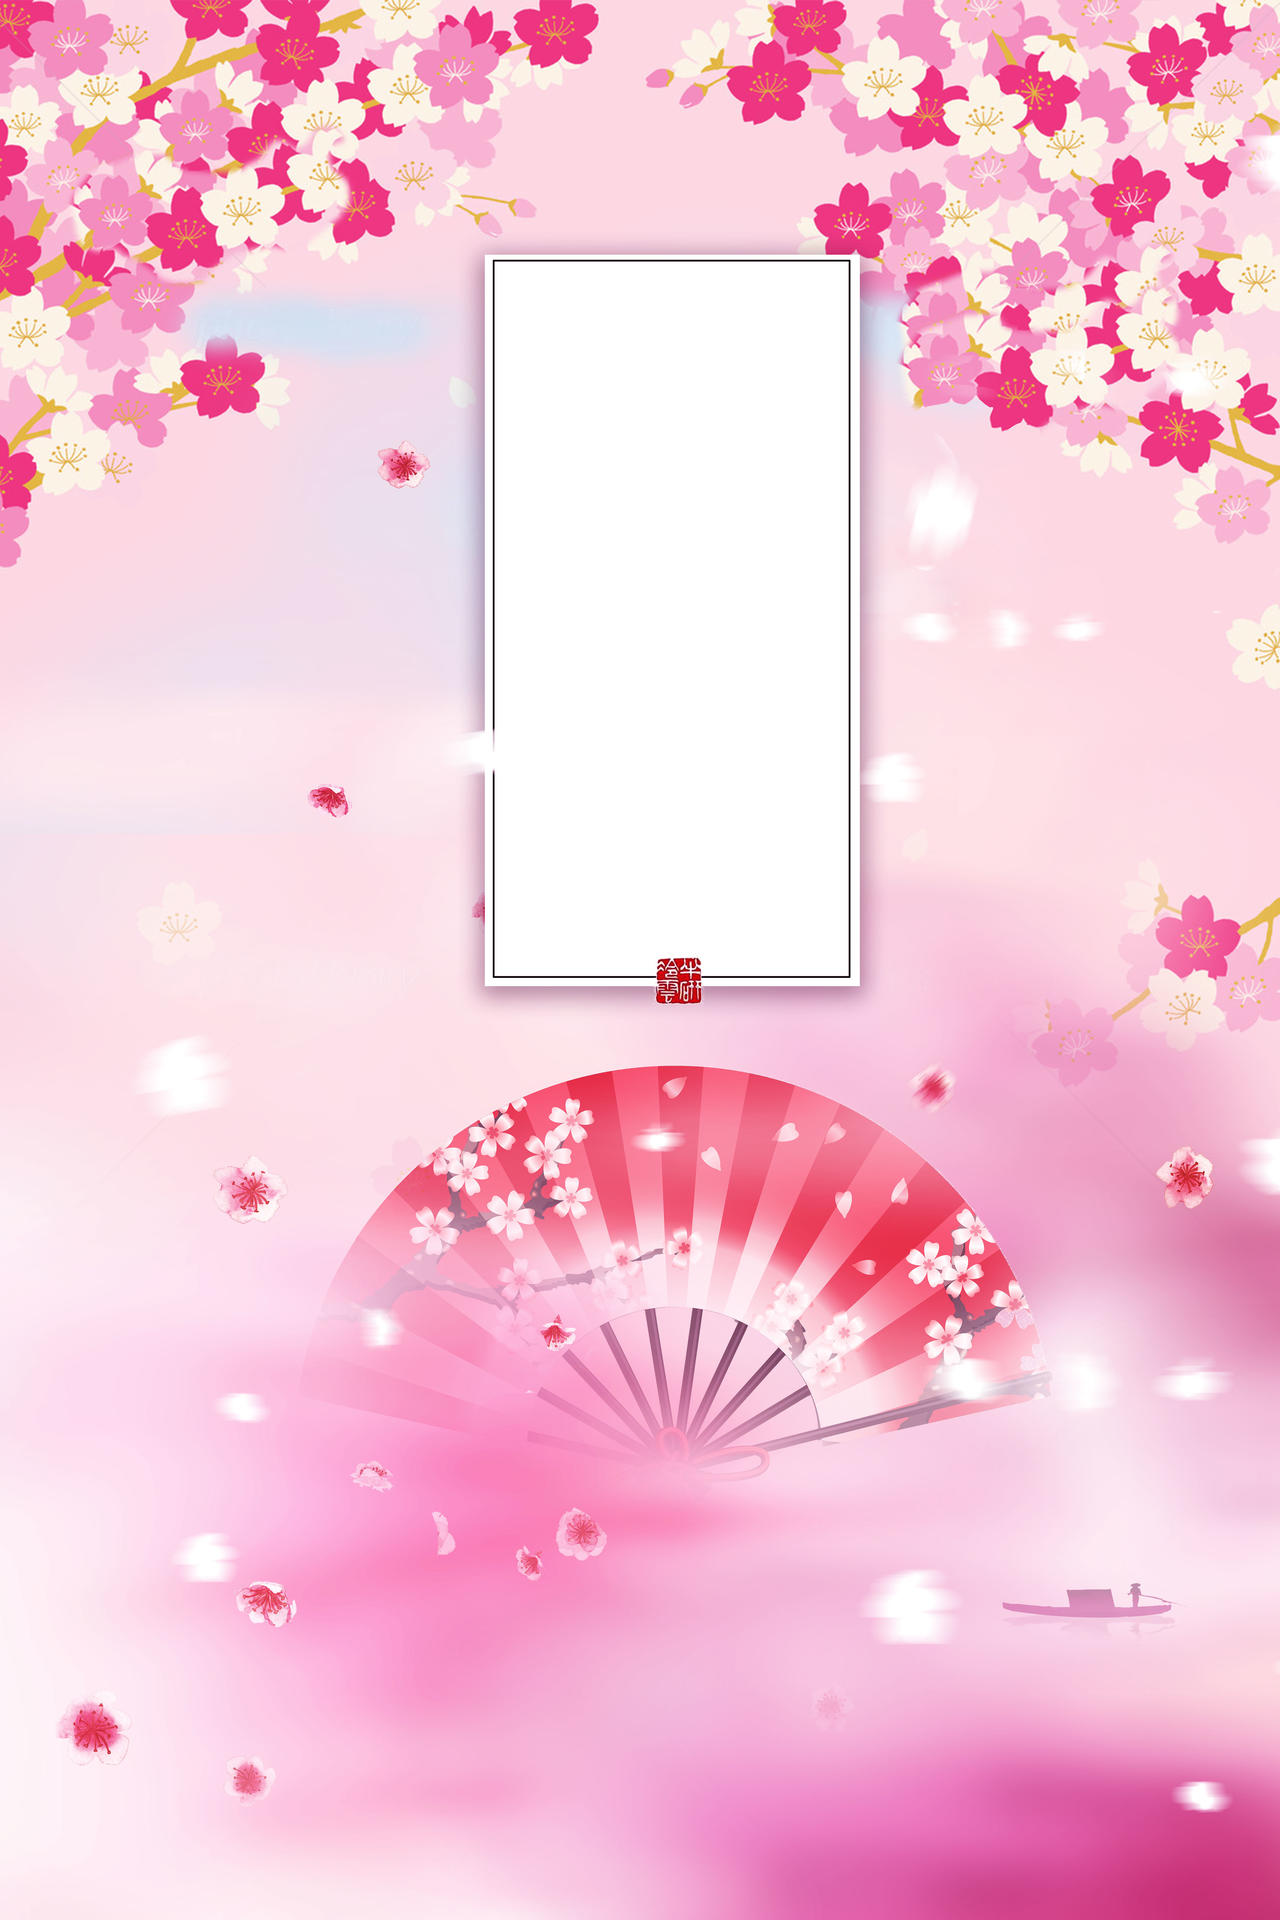 和风扇子手绘唯美插画桃花节旅游宣传海报粉色背景素材